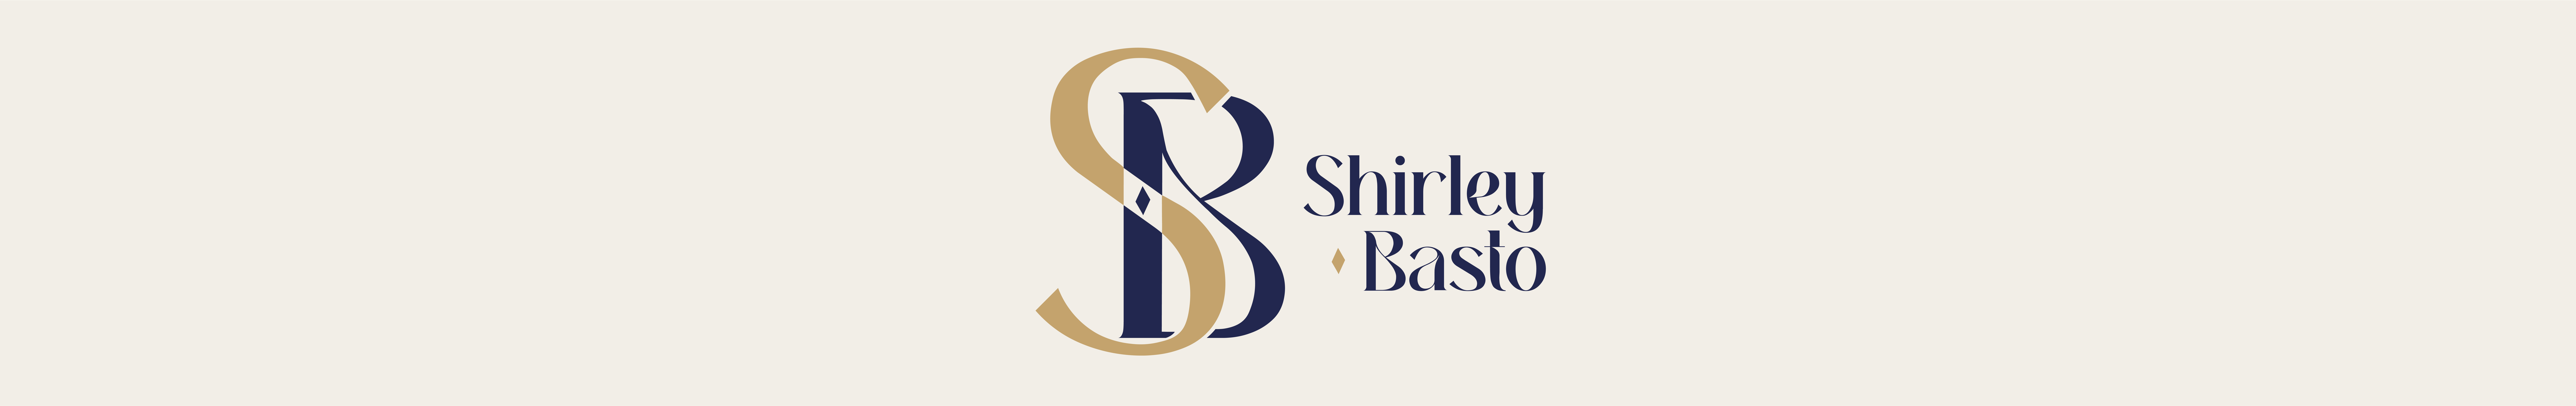 Banner de perfil de shirley basto